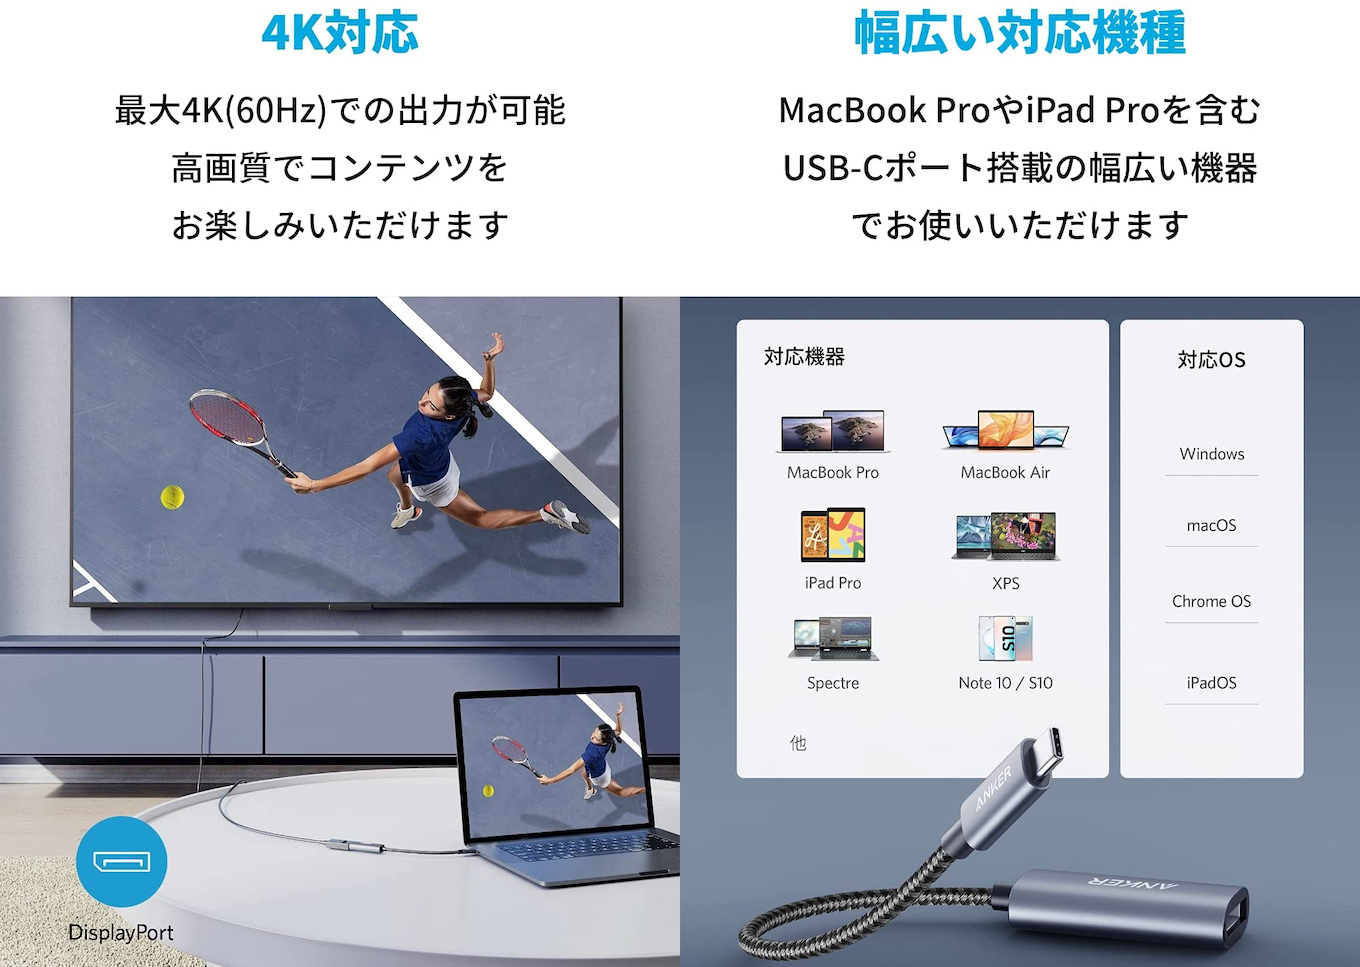 1259円 【ギフ_包装】 Anker PowerExpand 3-in-1 USB-C ハブ 4K対応HDMI出力ポート 90Wパススルー充電 PD対応 USB 3.0ポート